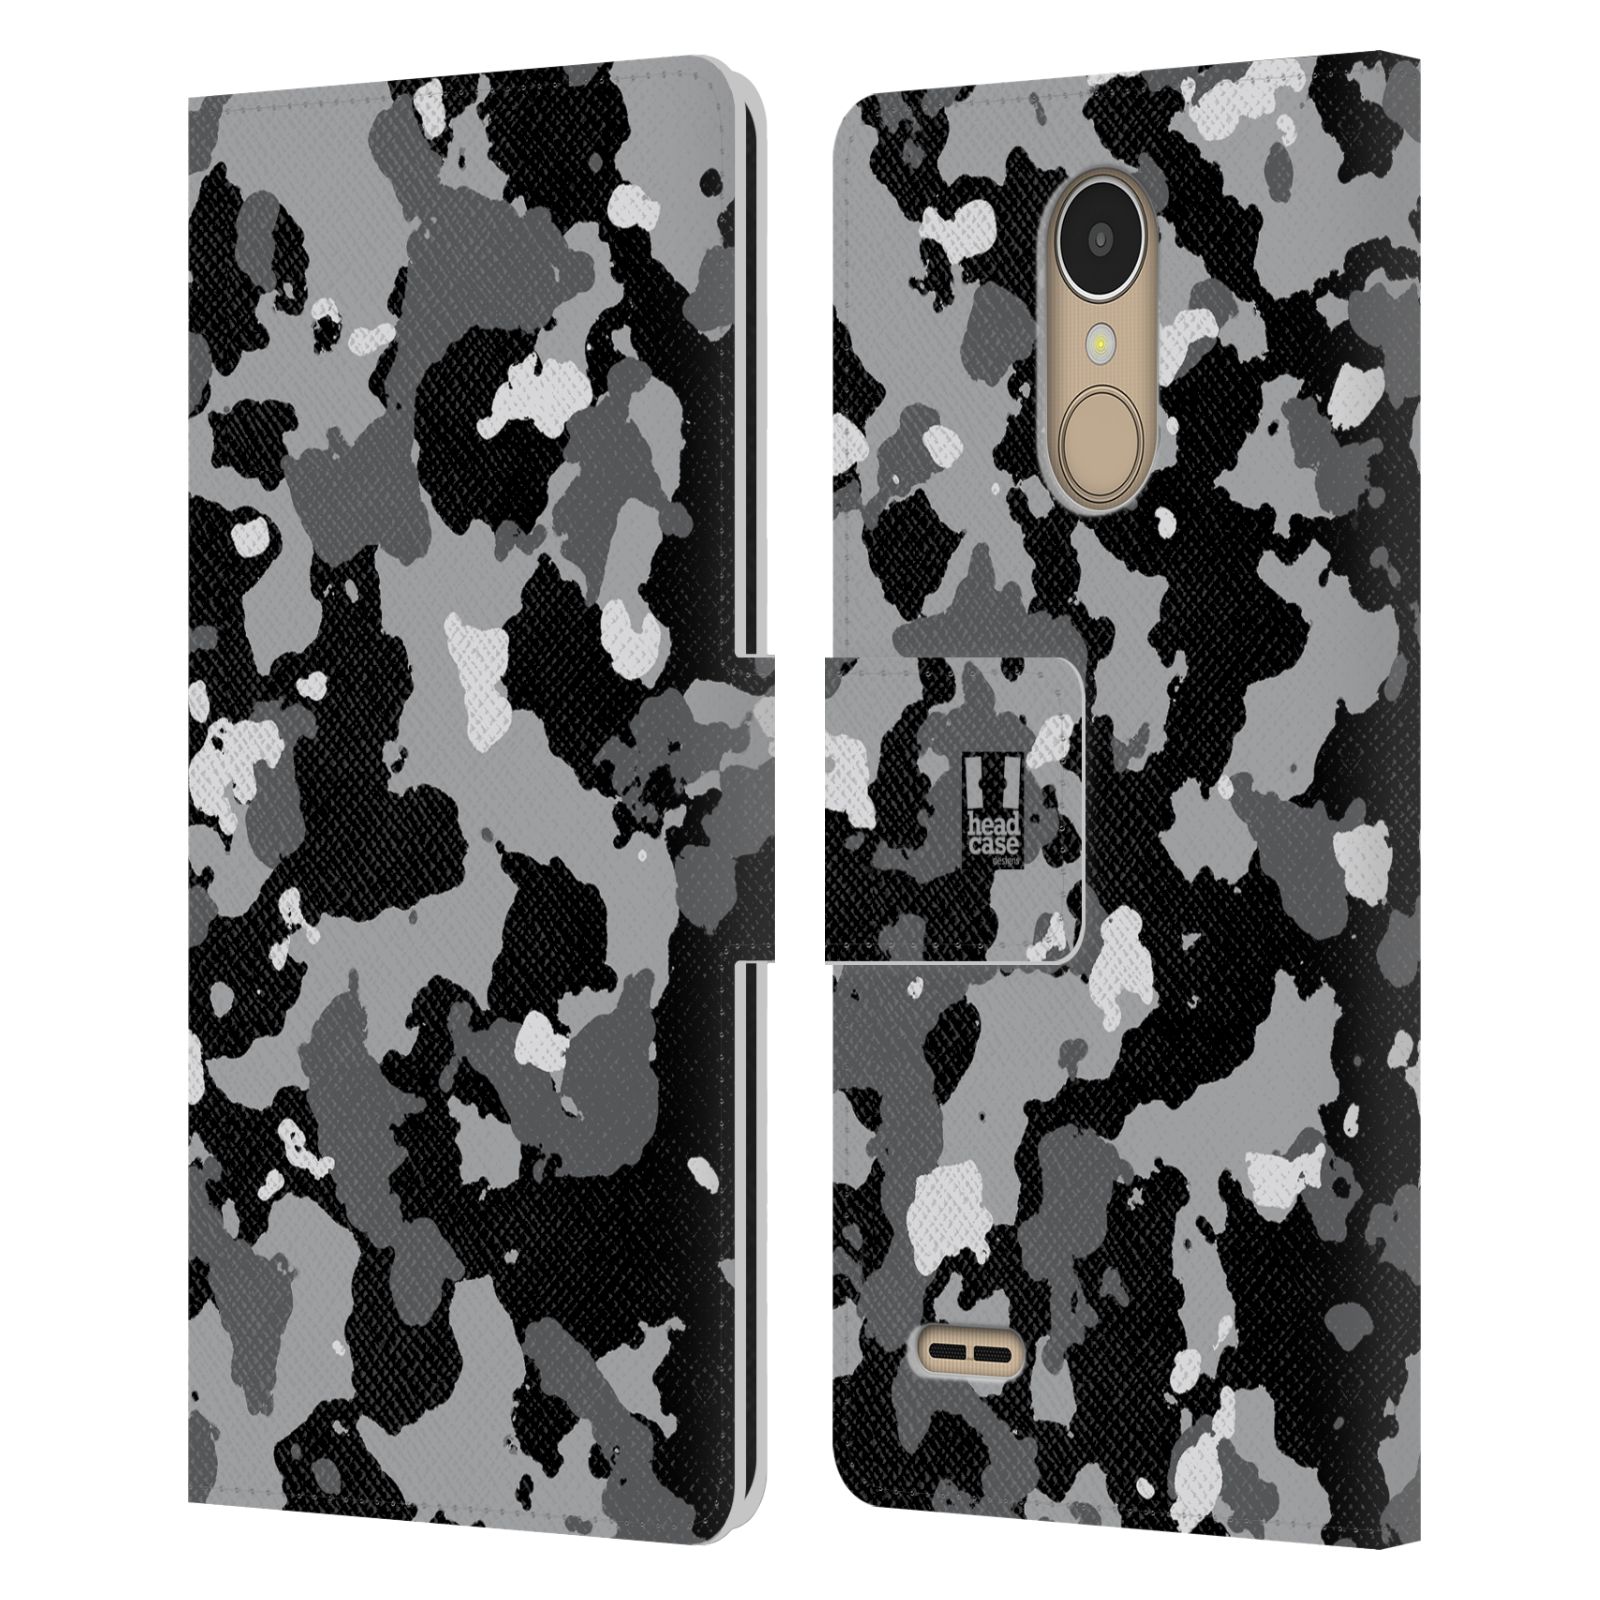 Pouzdro na mobil LG K10 (2017) - Head Case - kamuflaž černá a šedá